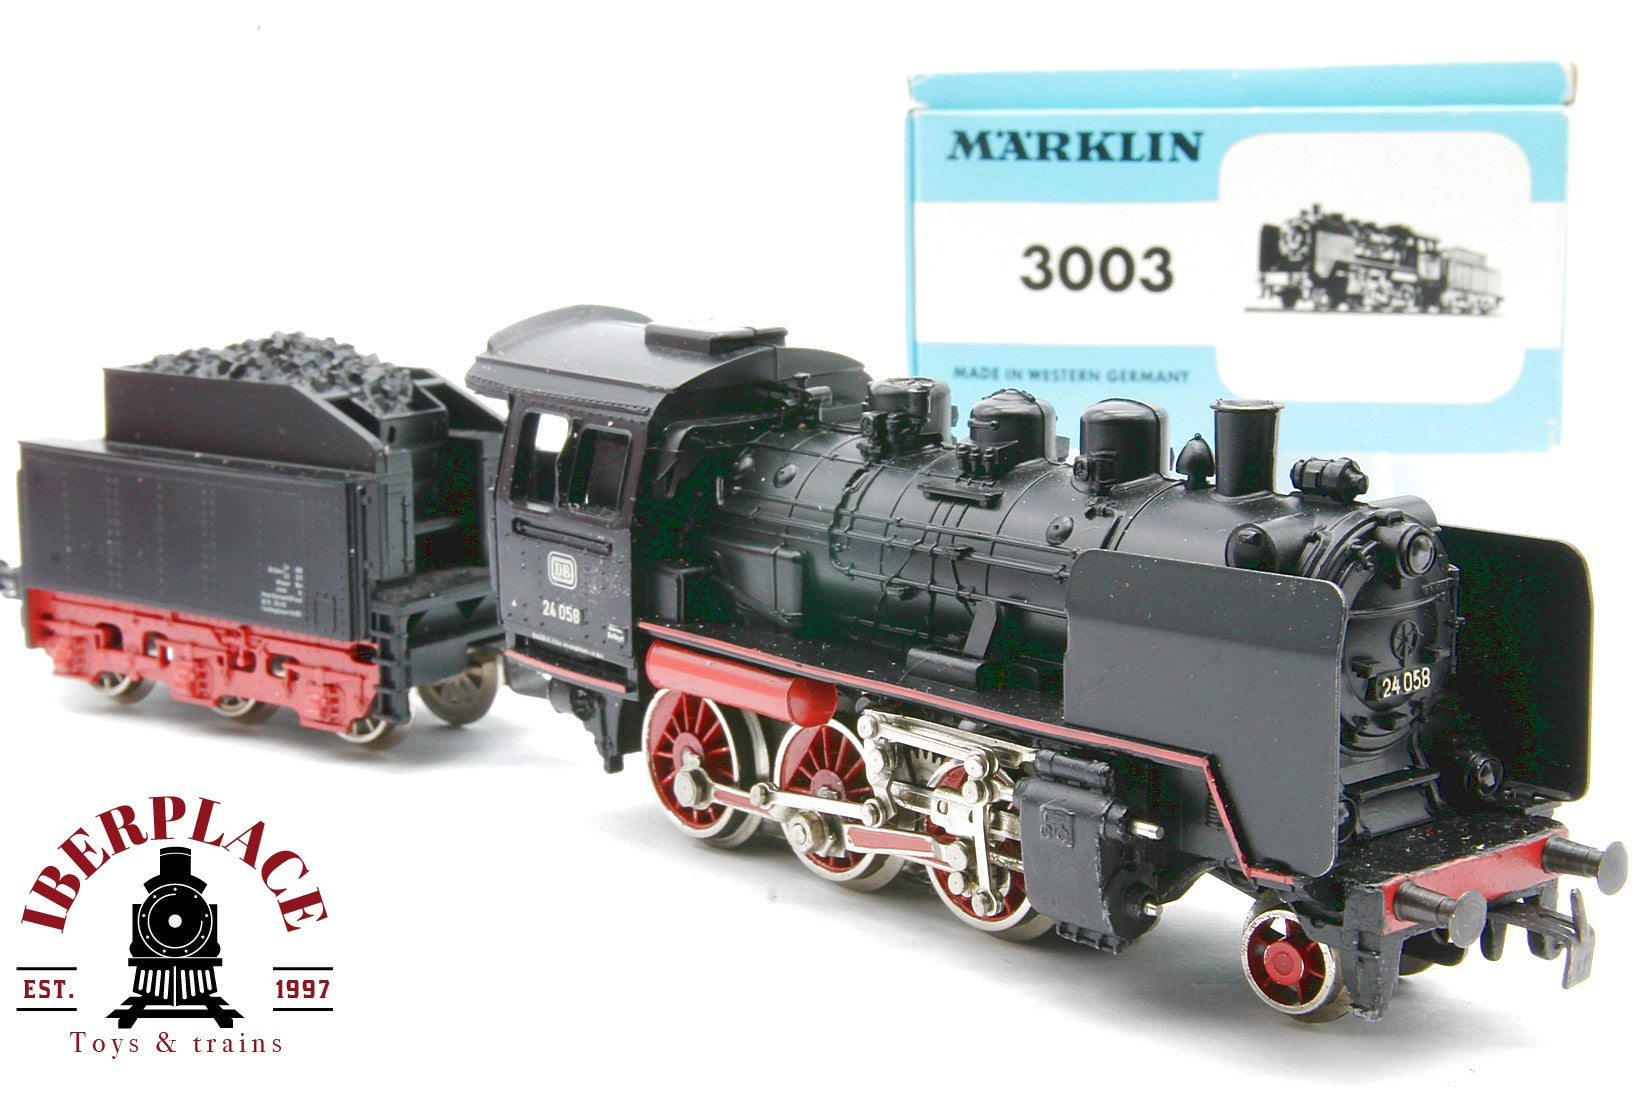 店舗良い Marklin HOゲージ 3003 ドイツ国鉄 BR24蒸気機関車 3線式交流 